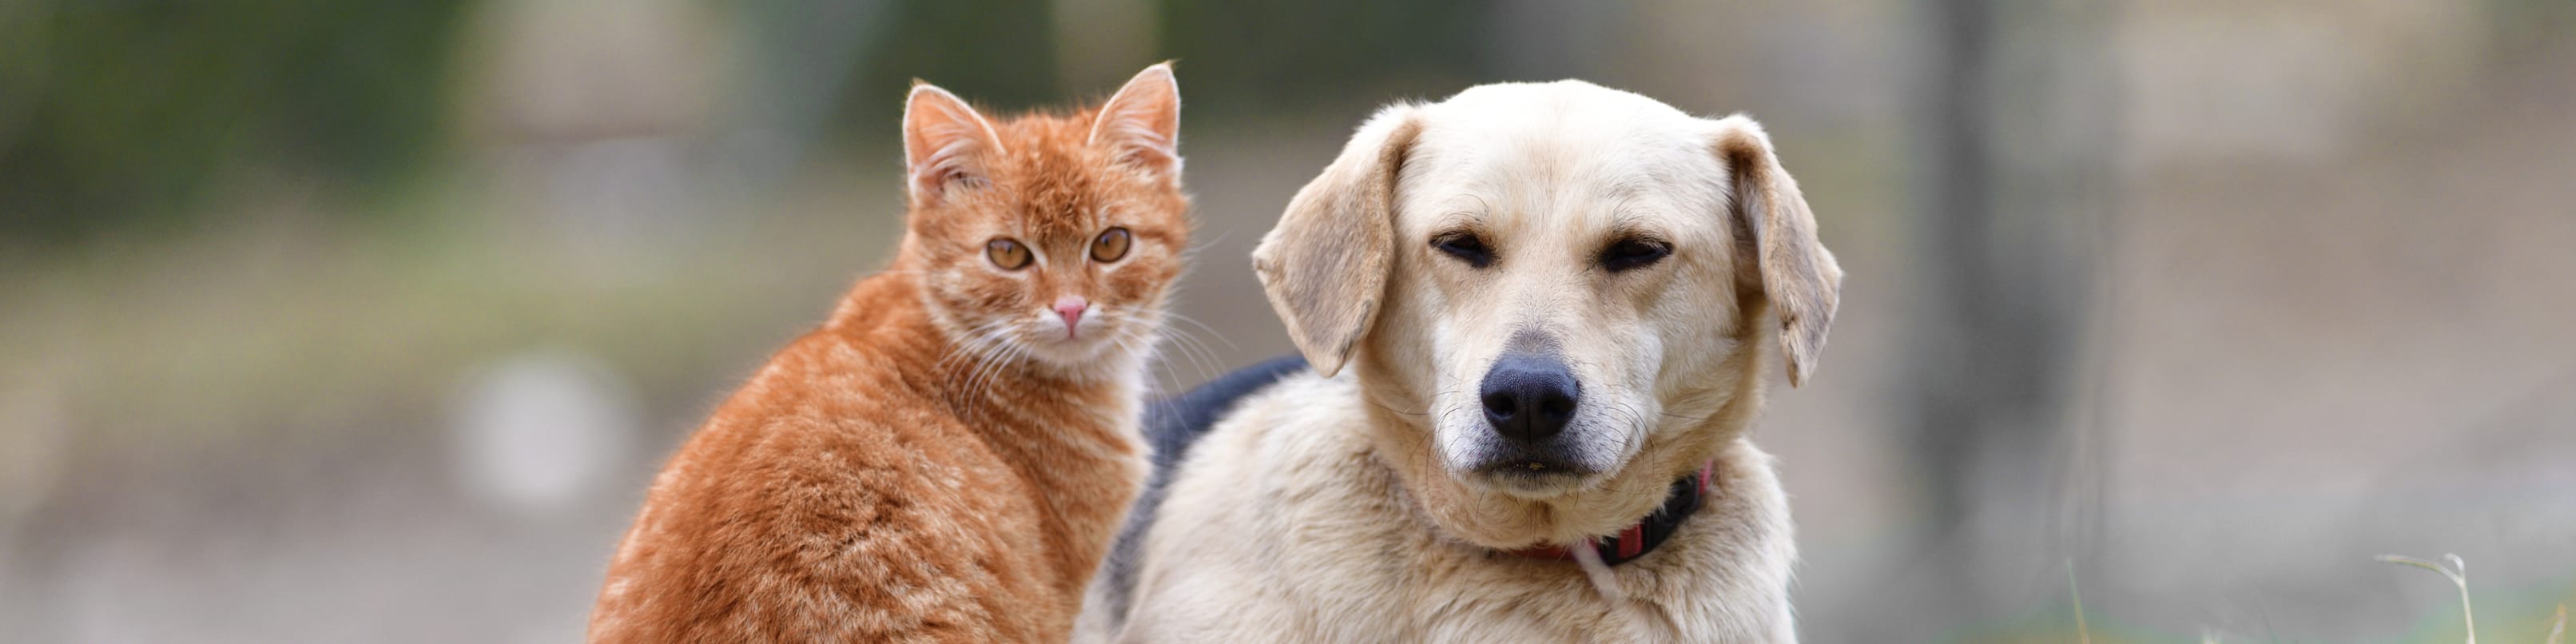 Katze und Hund sitzen friedlich nebeneinander